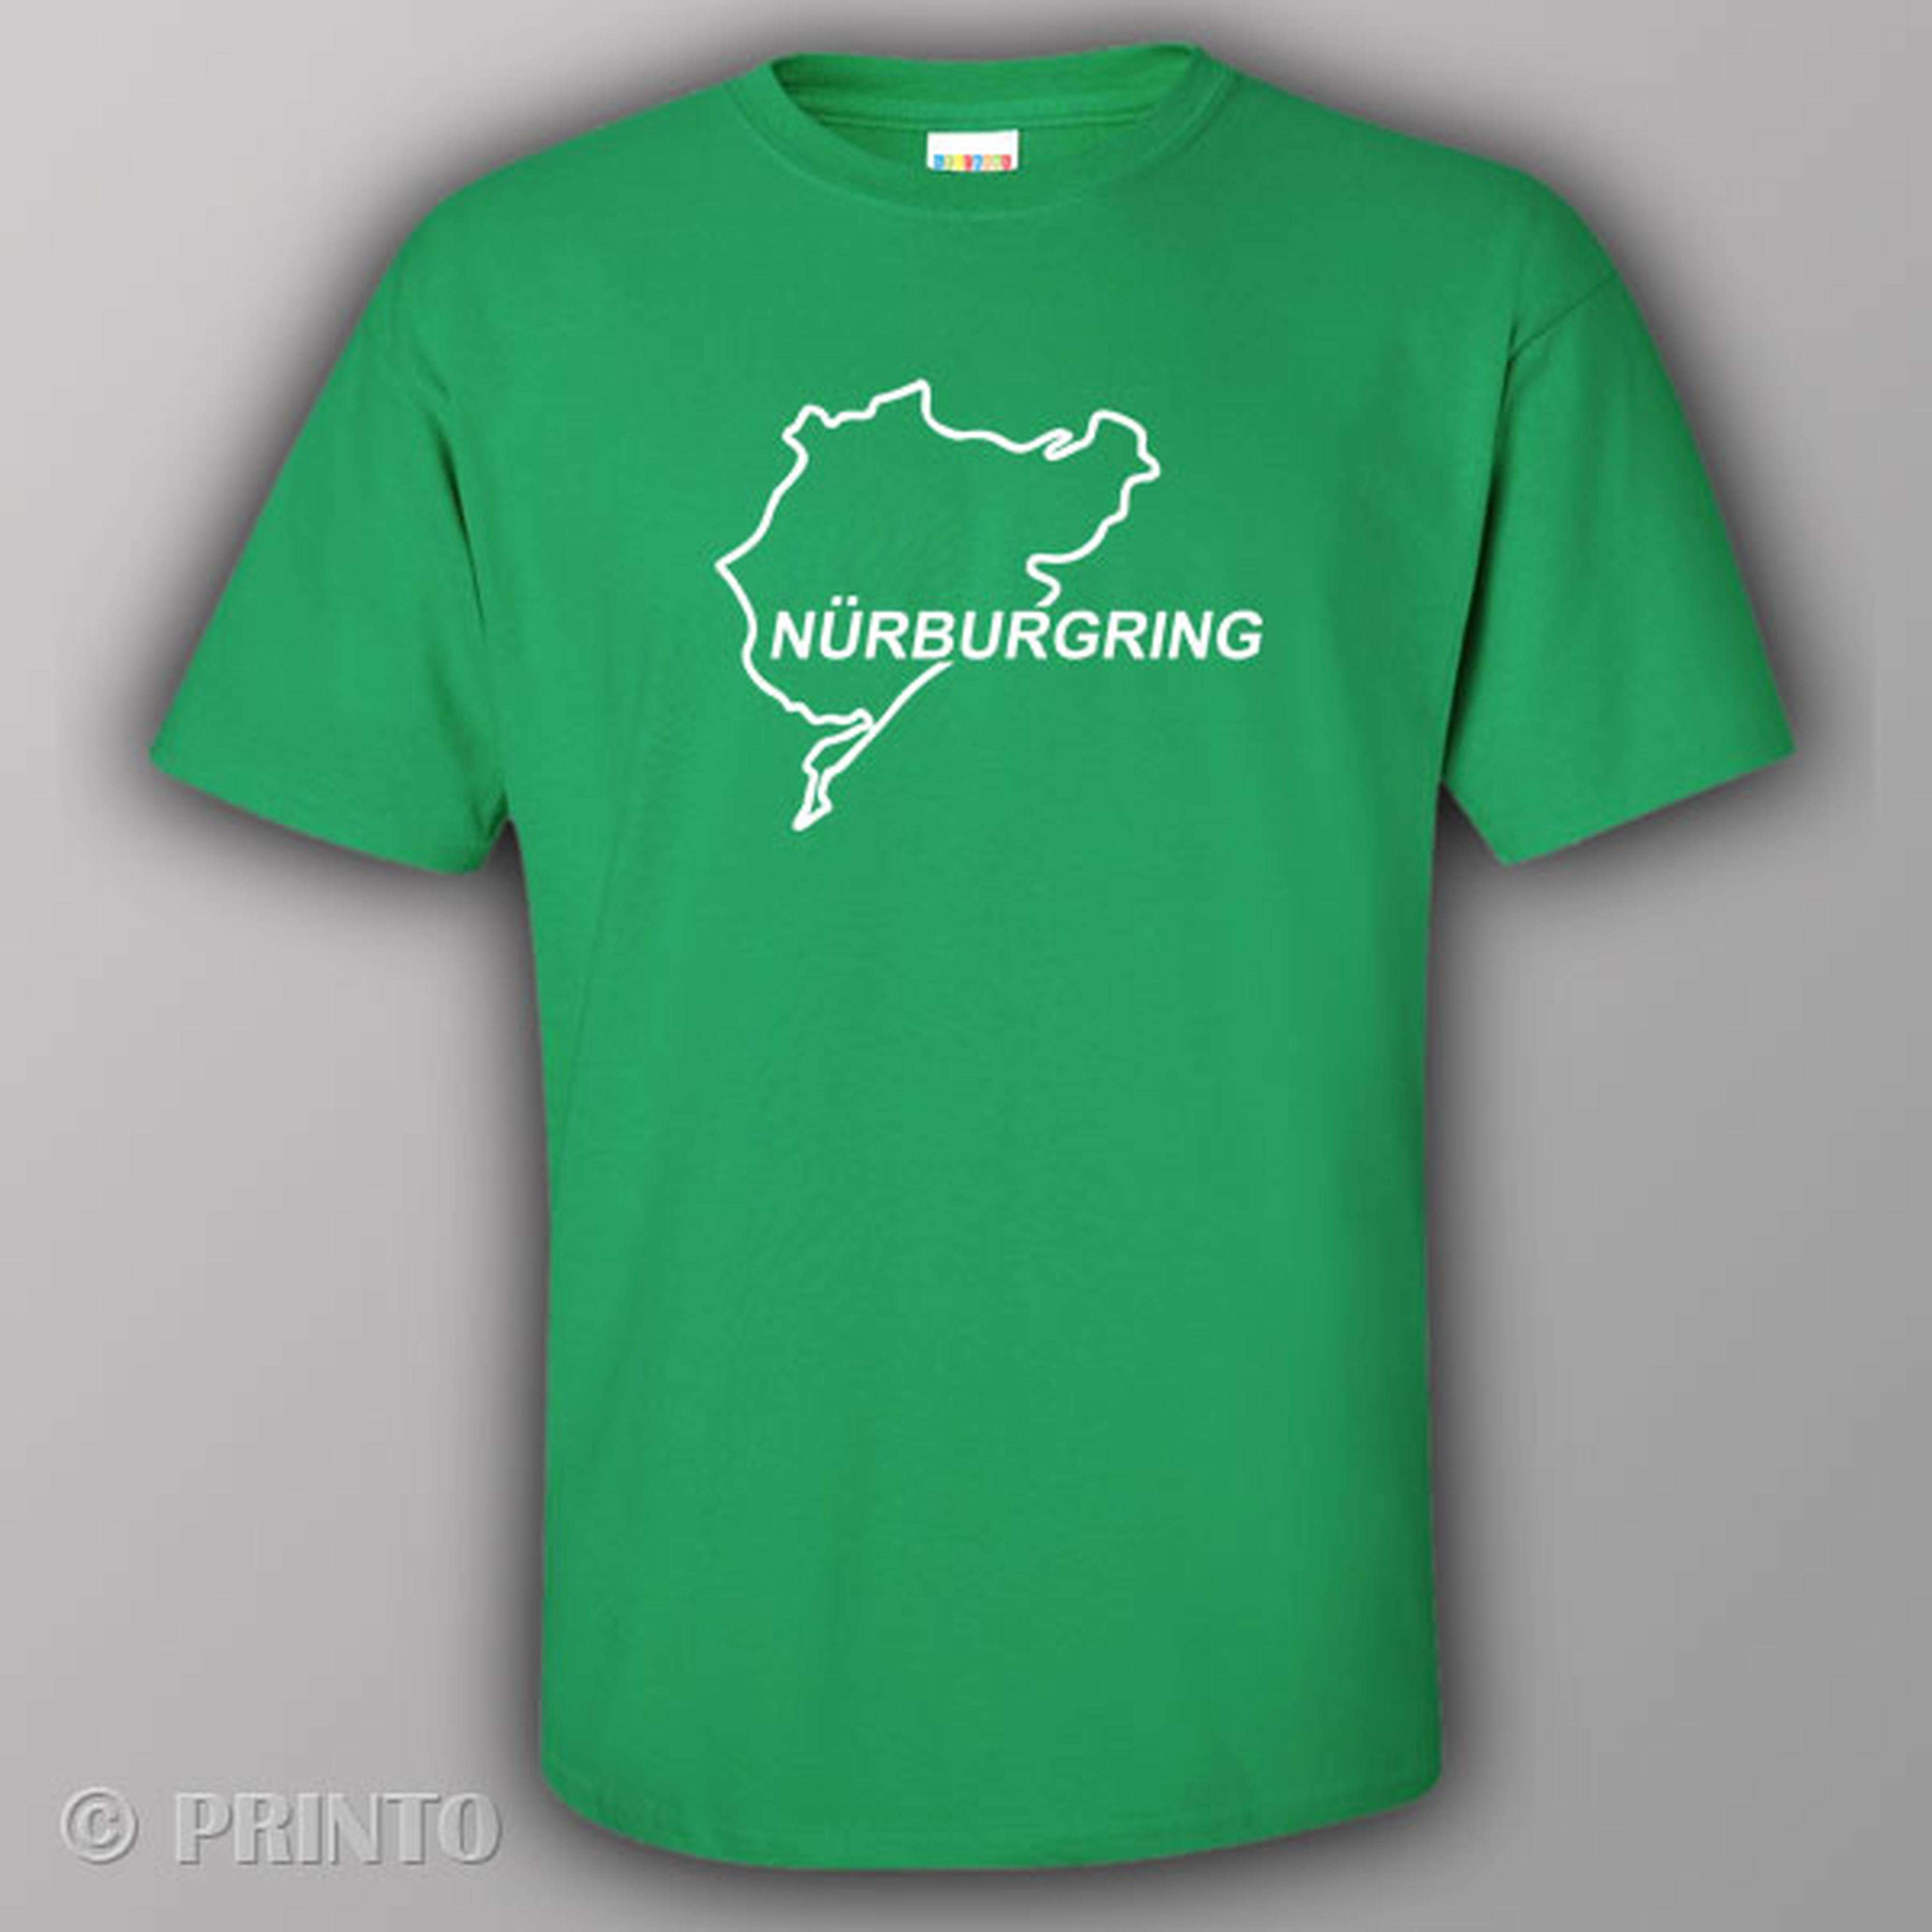 Nurburgring - T-shirt